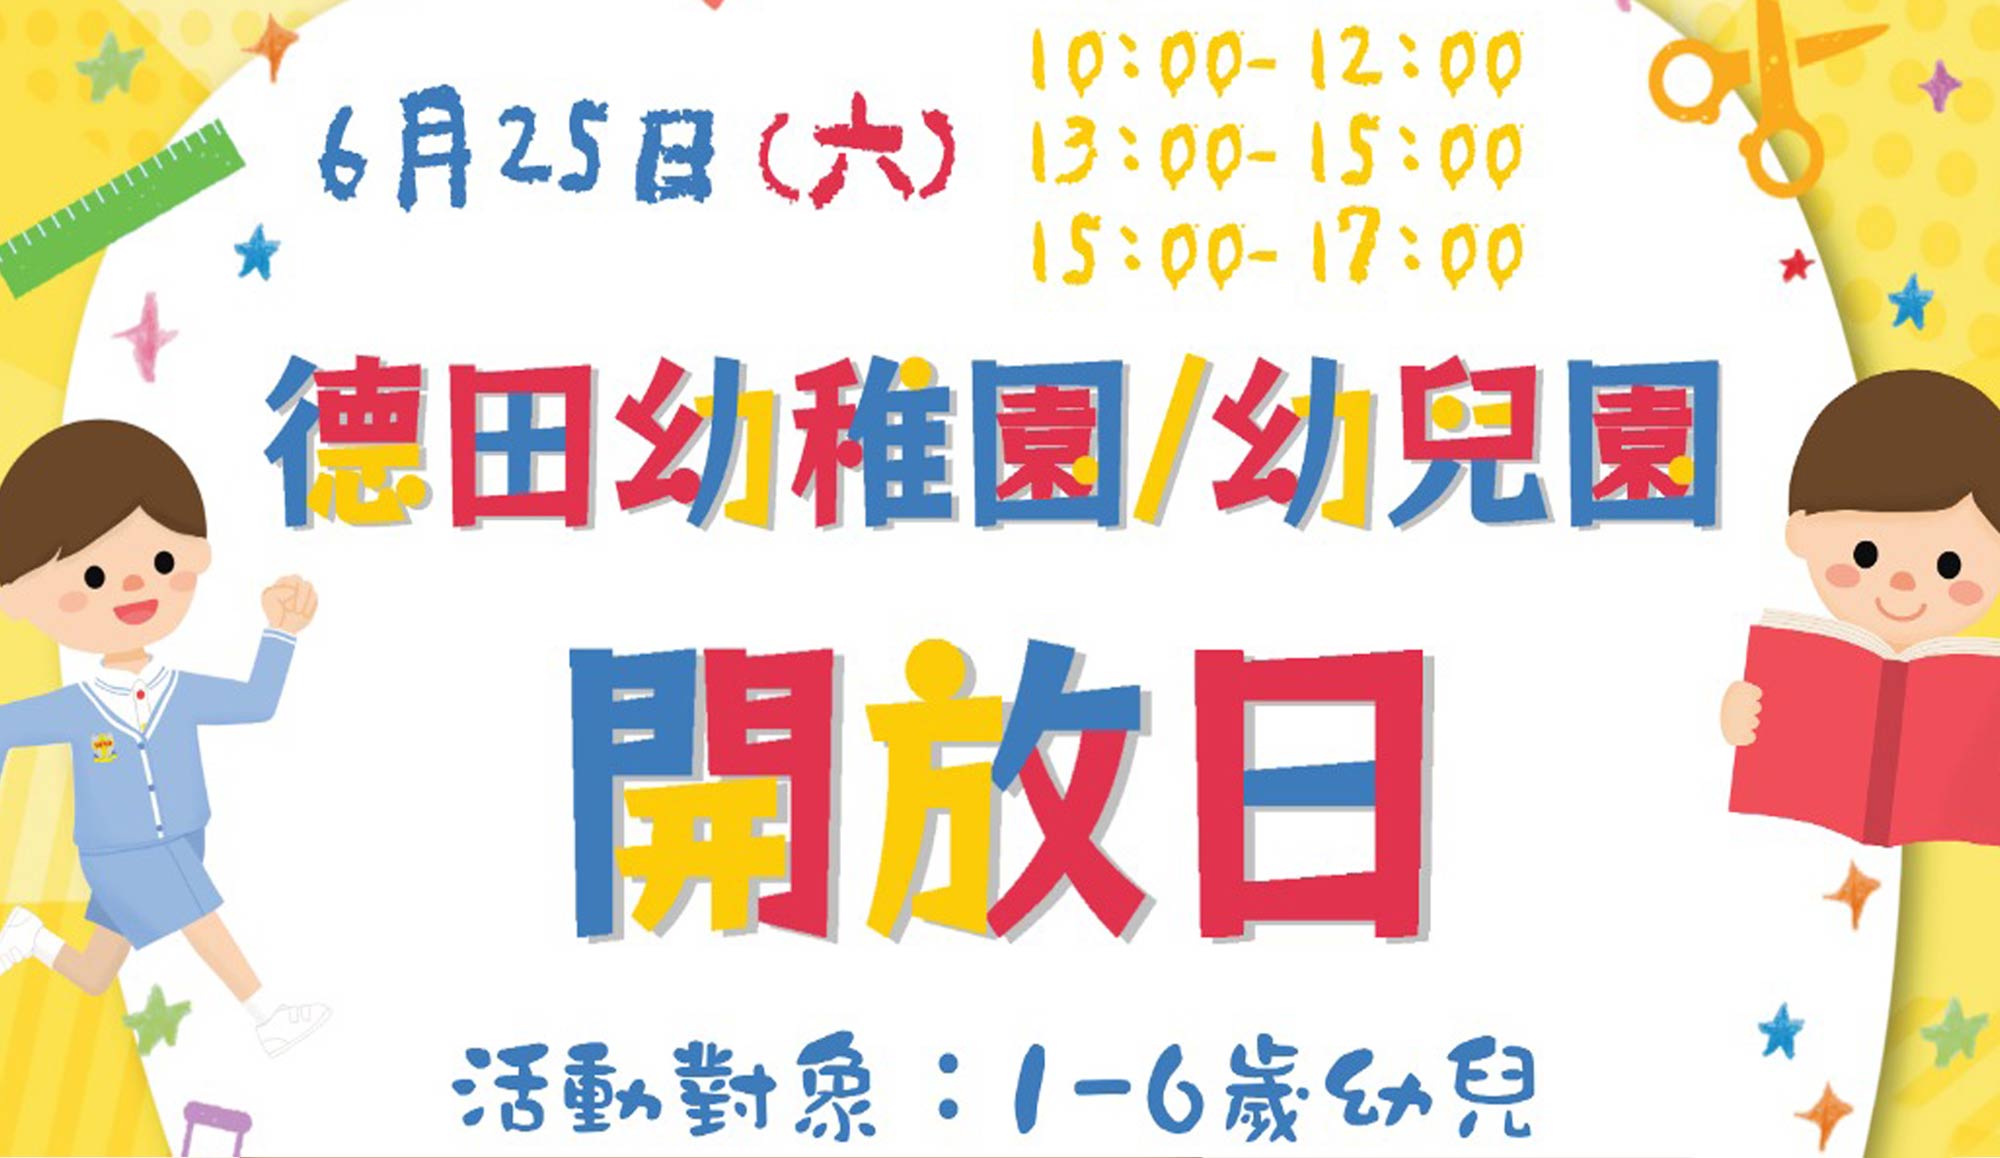 封面图片 - 基督教家庭服务中心德田幼稚园 / 幼儿园开放日